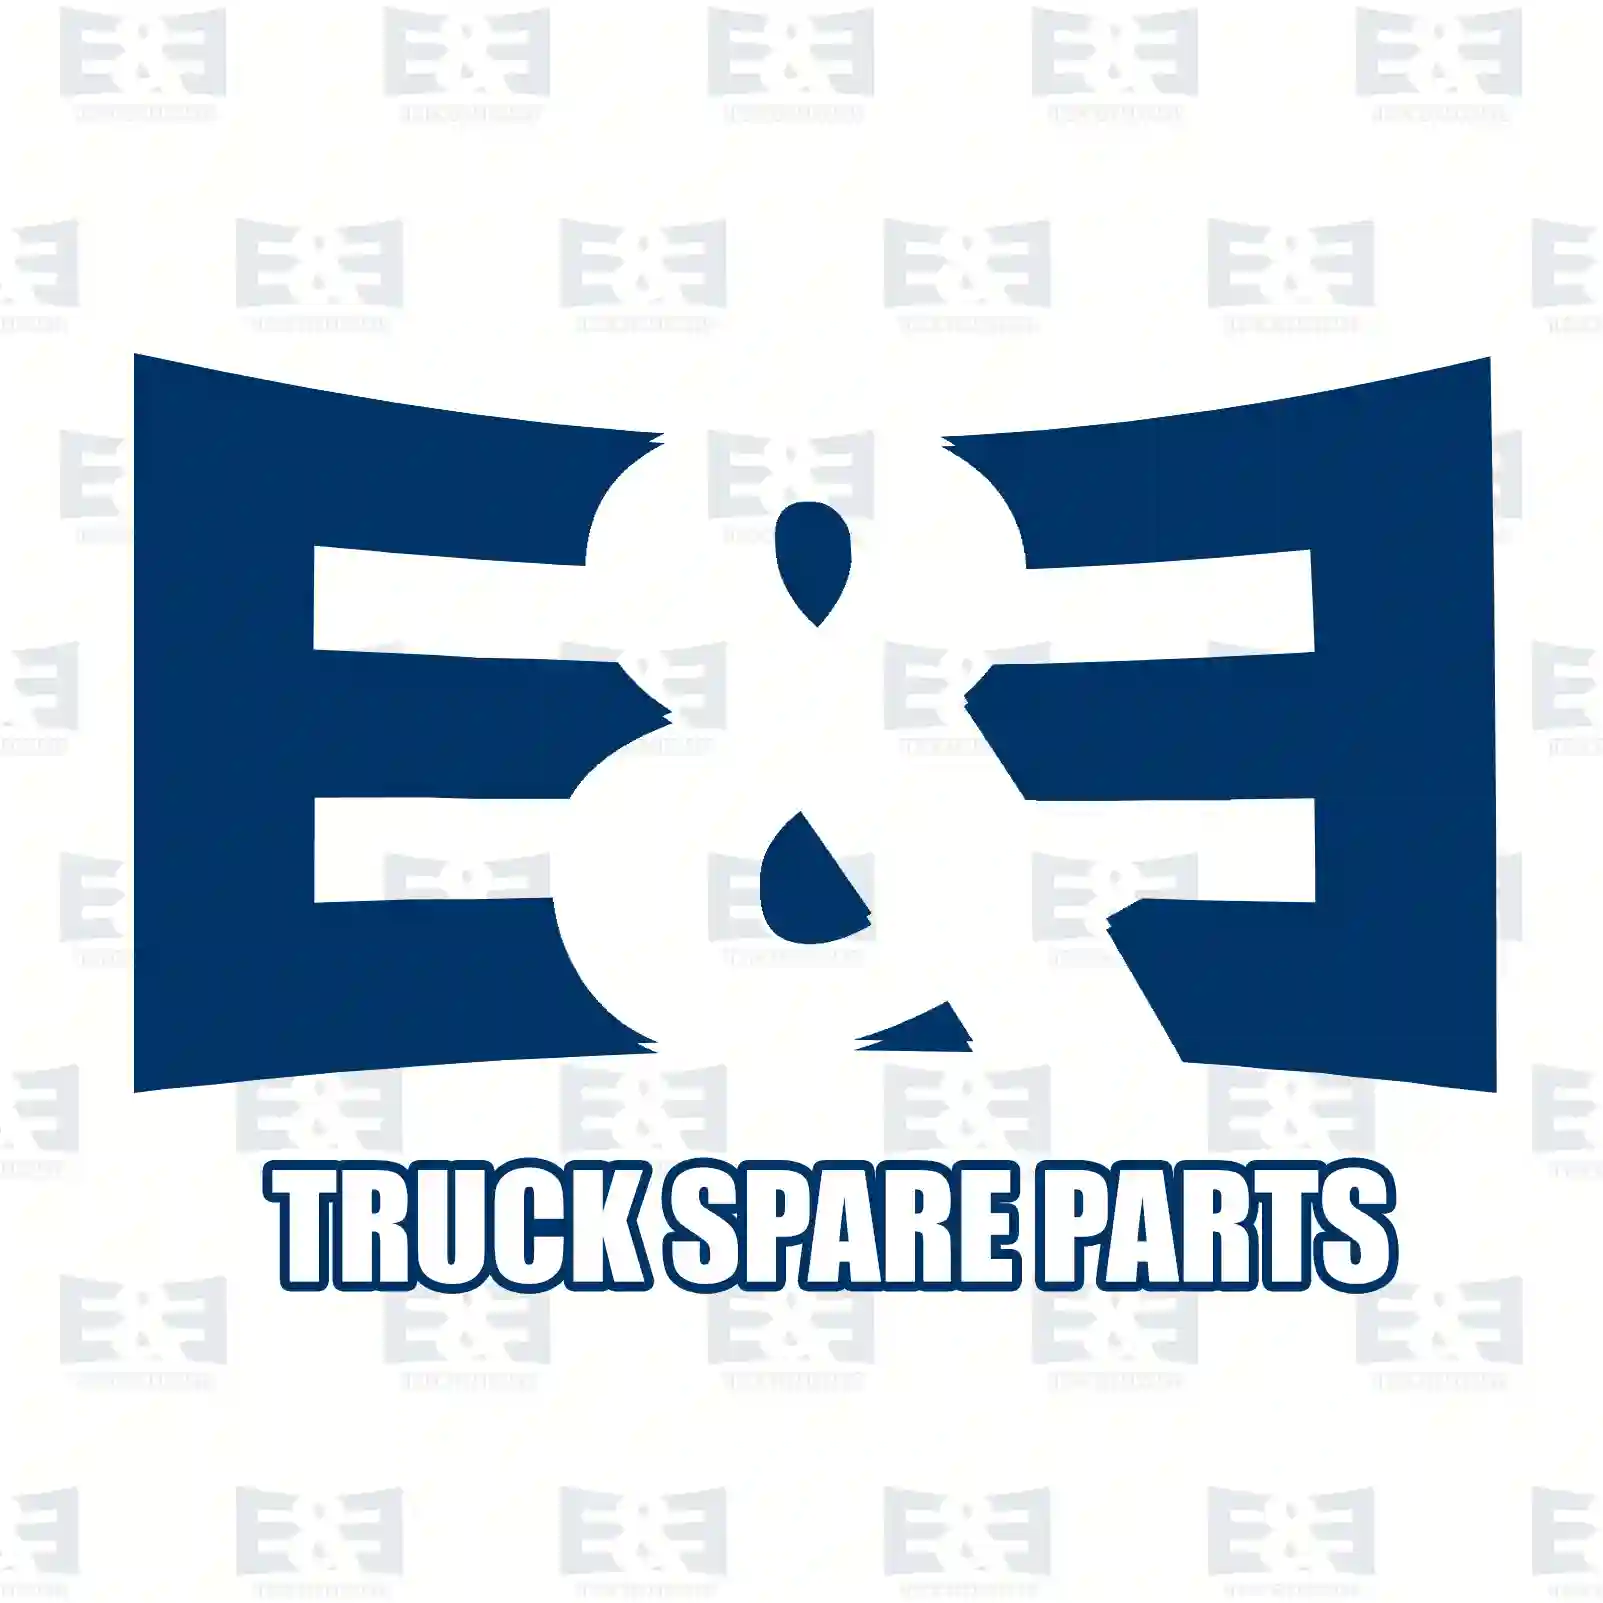 Cabin tilt unit, 2E2275817, 500368557, 503853801, 504065532, ZG60378-0008, , , ||  2E2275817 E&E Truck Spare Parts | Truck Spare Parts, Auotomotive Spare Parts Cabin tilt unit, 2E2275817, 500368557, 503853801, 504065532, ZG60378-0008, , , ||  2E2275817 E&E Truck Spare Parts | Truck Spare Parts, Auotomotive Spare Parts